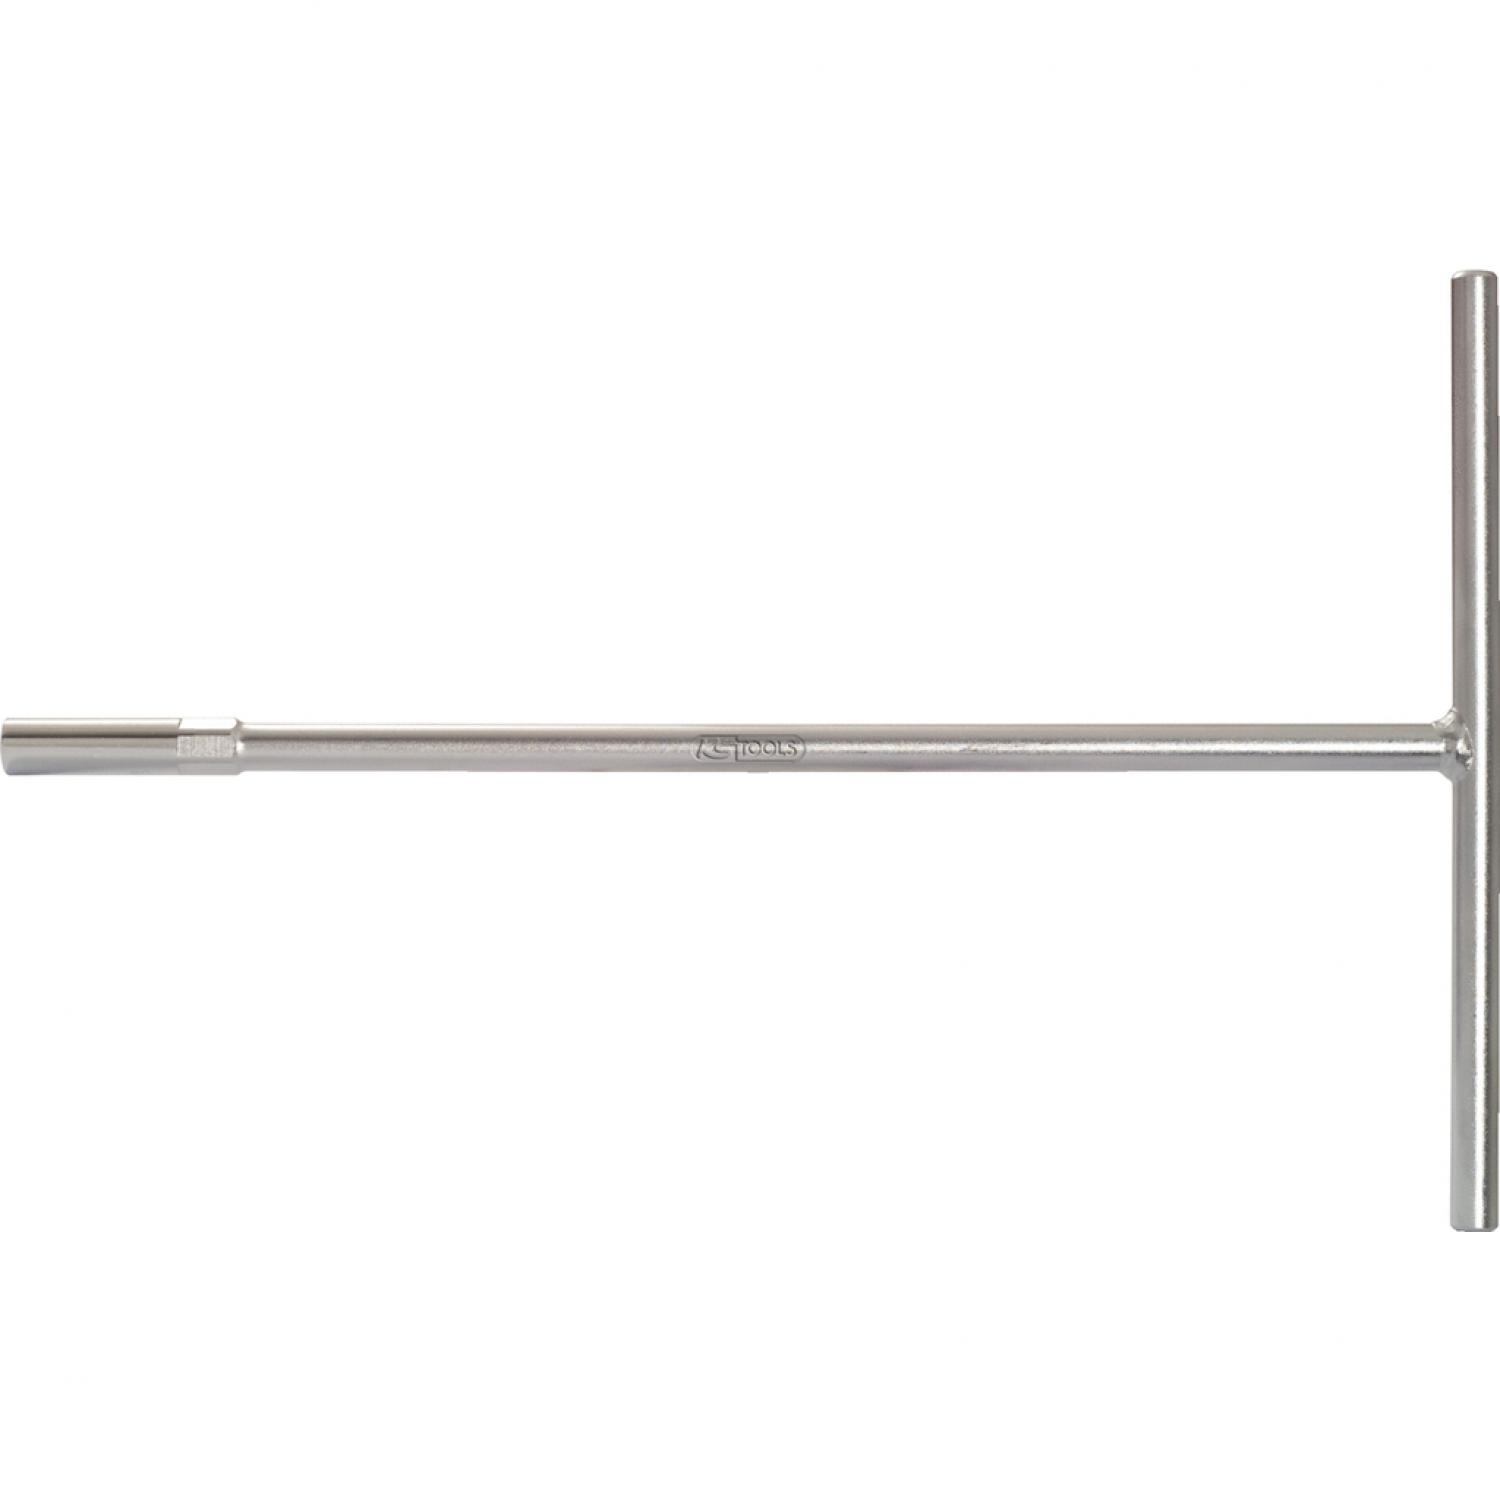 Торцовый ключ с Т-образной рукояткой, 300 мм, 8 мм